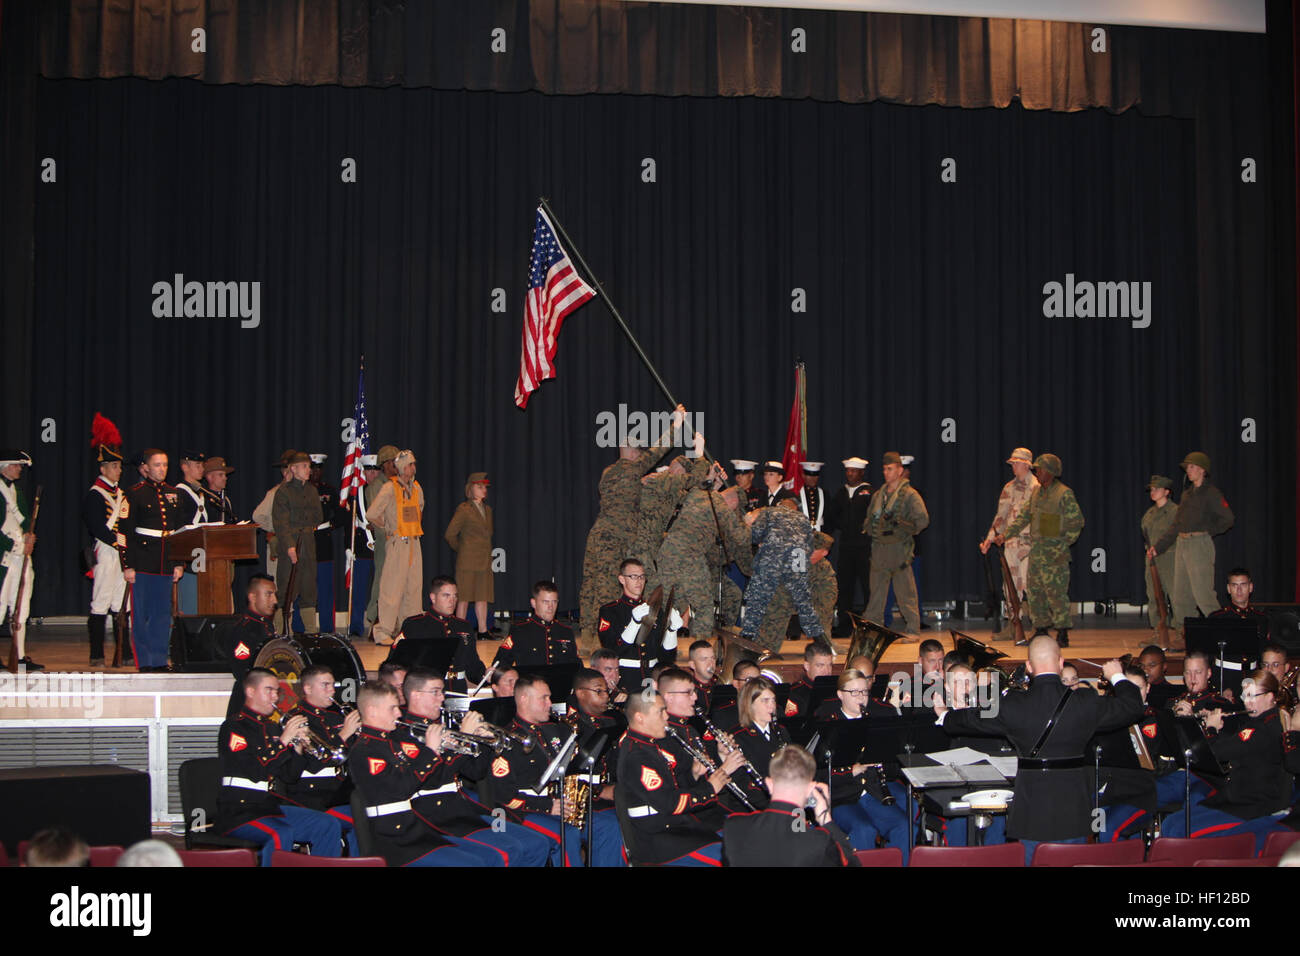 Cinq Marines et un marin recrée la levée du drapeau d'Iwo Jima avant le gâteau symbolique de la Cherry Point 237e Marine Corps Ball Cérémonie à la station Theatre Le 8 novembre. 237e anniversaire du Corps des Marines Pageant 121108-M-EY704-079 Banque D'Images